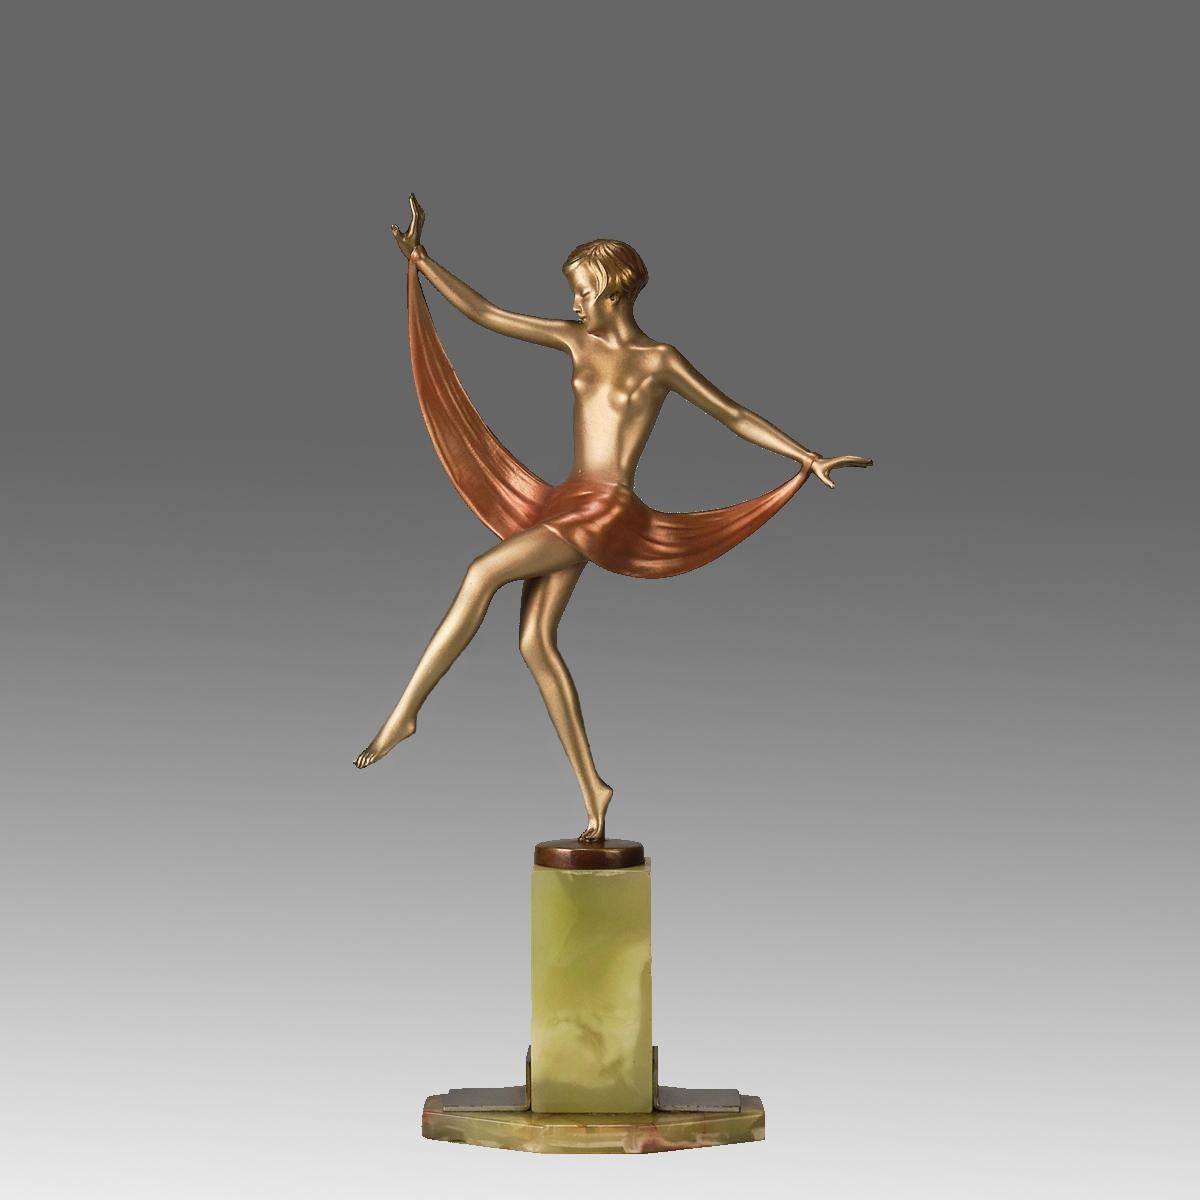 Eine beeindruckende Bronzefigur aus dem frühen 20. Jahrhundert, kalt bemalt, vergoldet und emailliert, die eine junge, energiegeladene Schönheit in tänzerischer Pose mit einem um ihre Hüfte drapierten Schal darstellt. Die Bronze mit ausgezeichneter